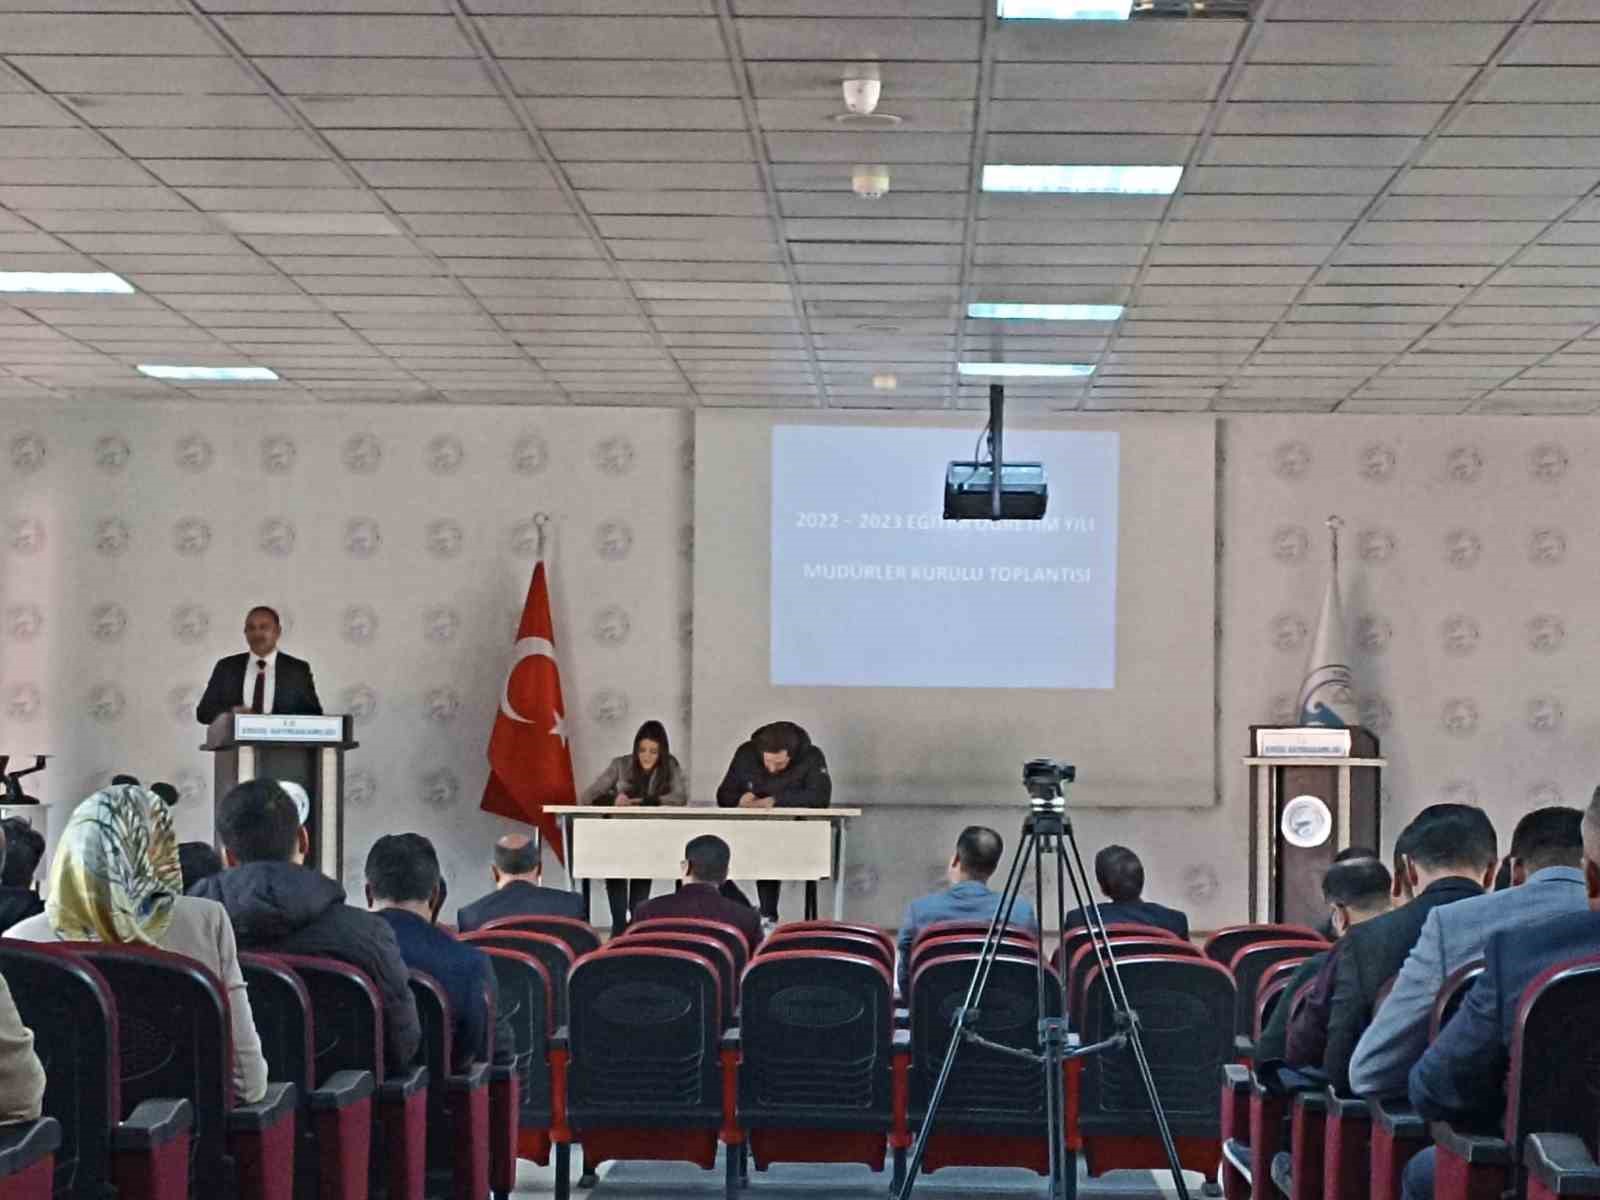 Erciş’te müdürler kurulu toplantısı